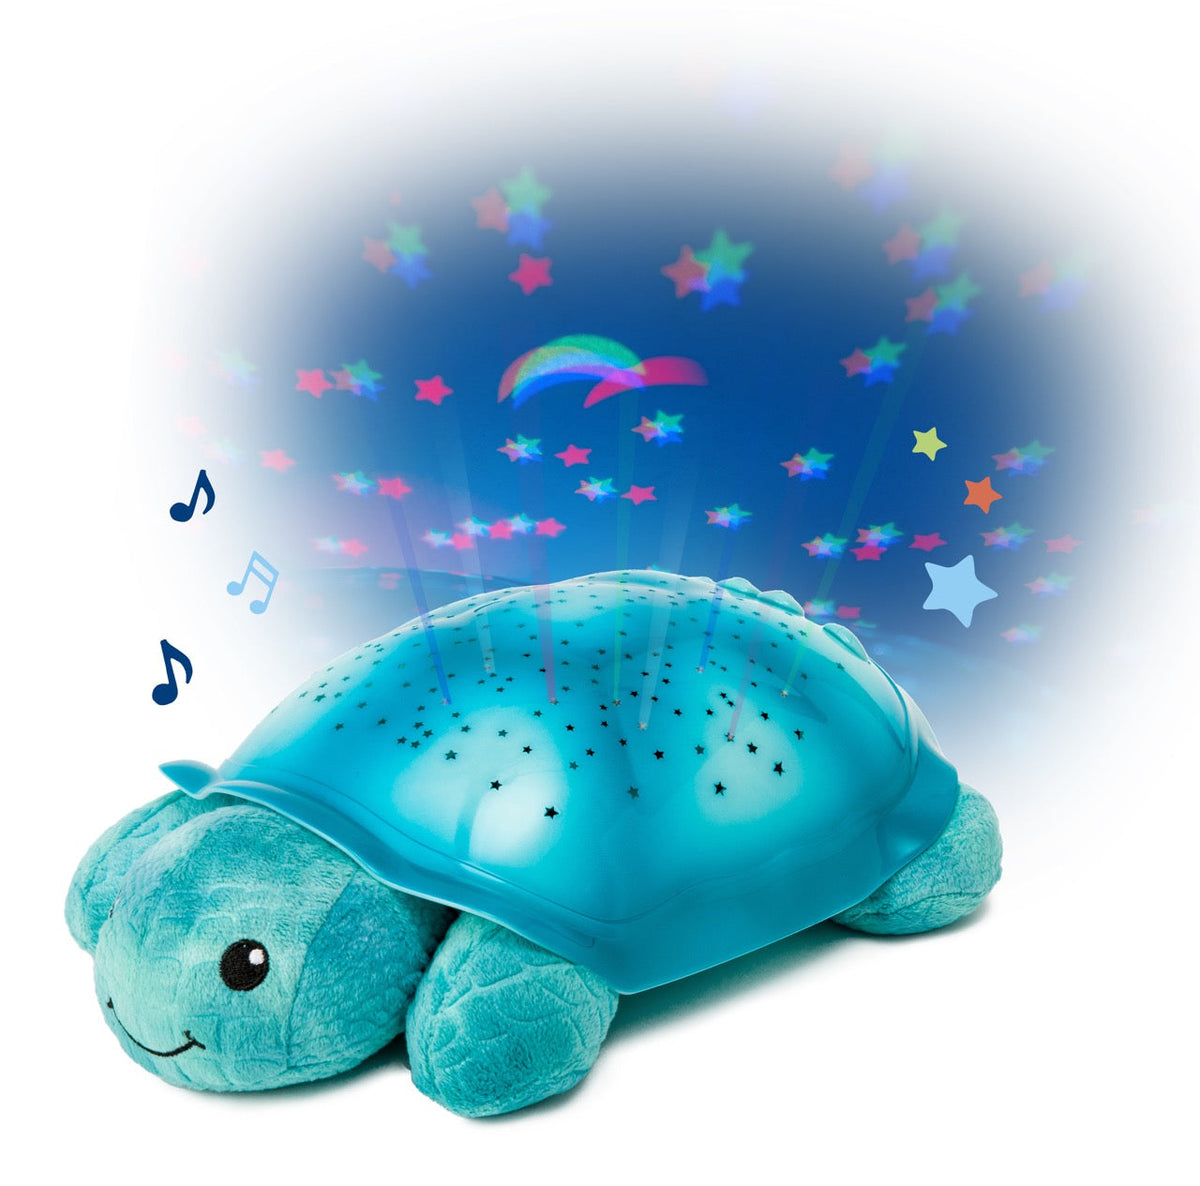 Veilleuse Tortue - Twilight turtle - Étoiles et constellations - Blue Bleu